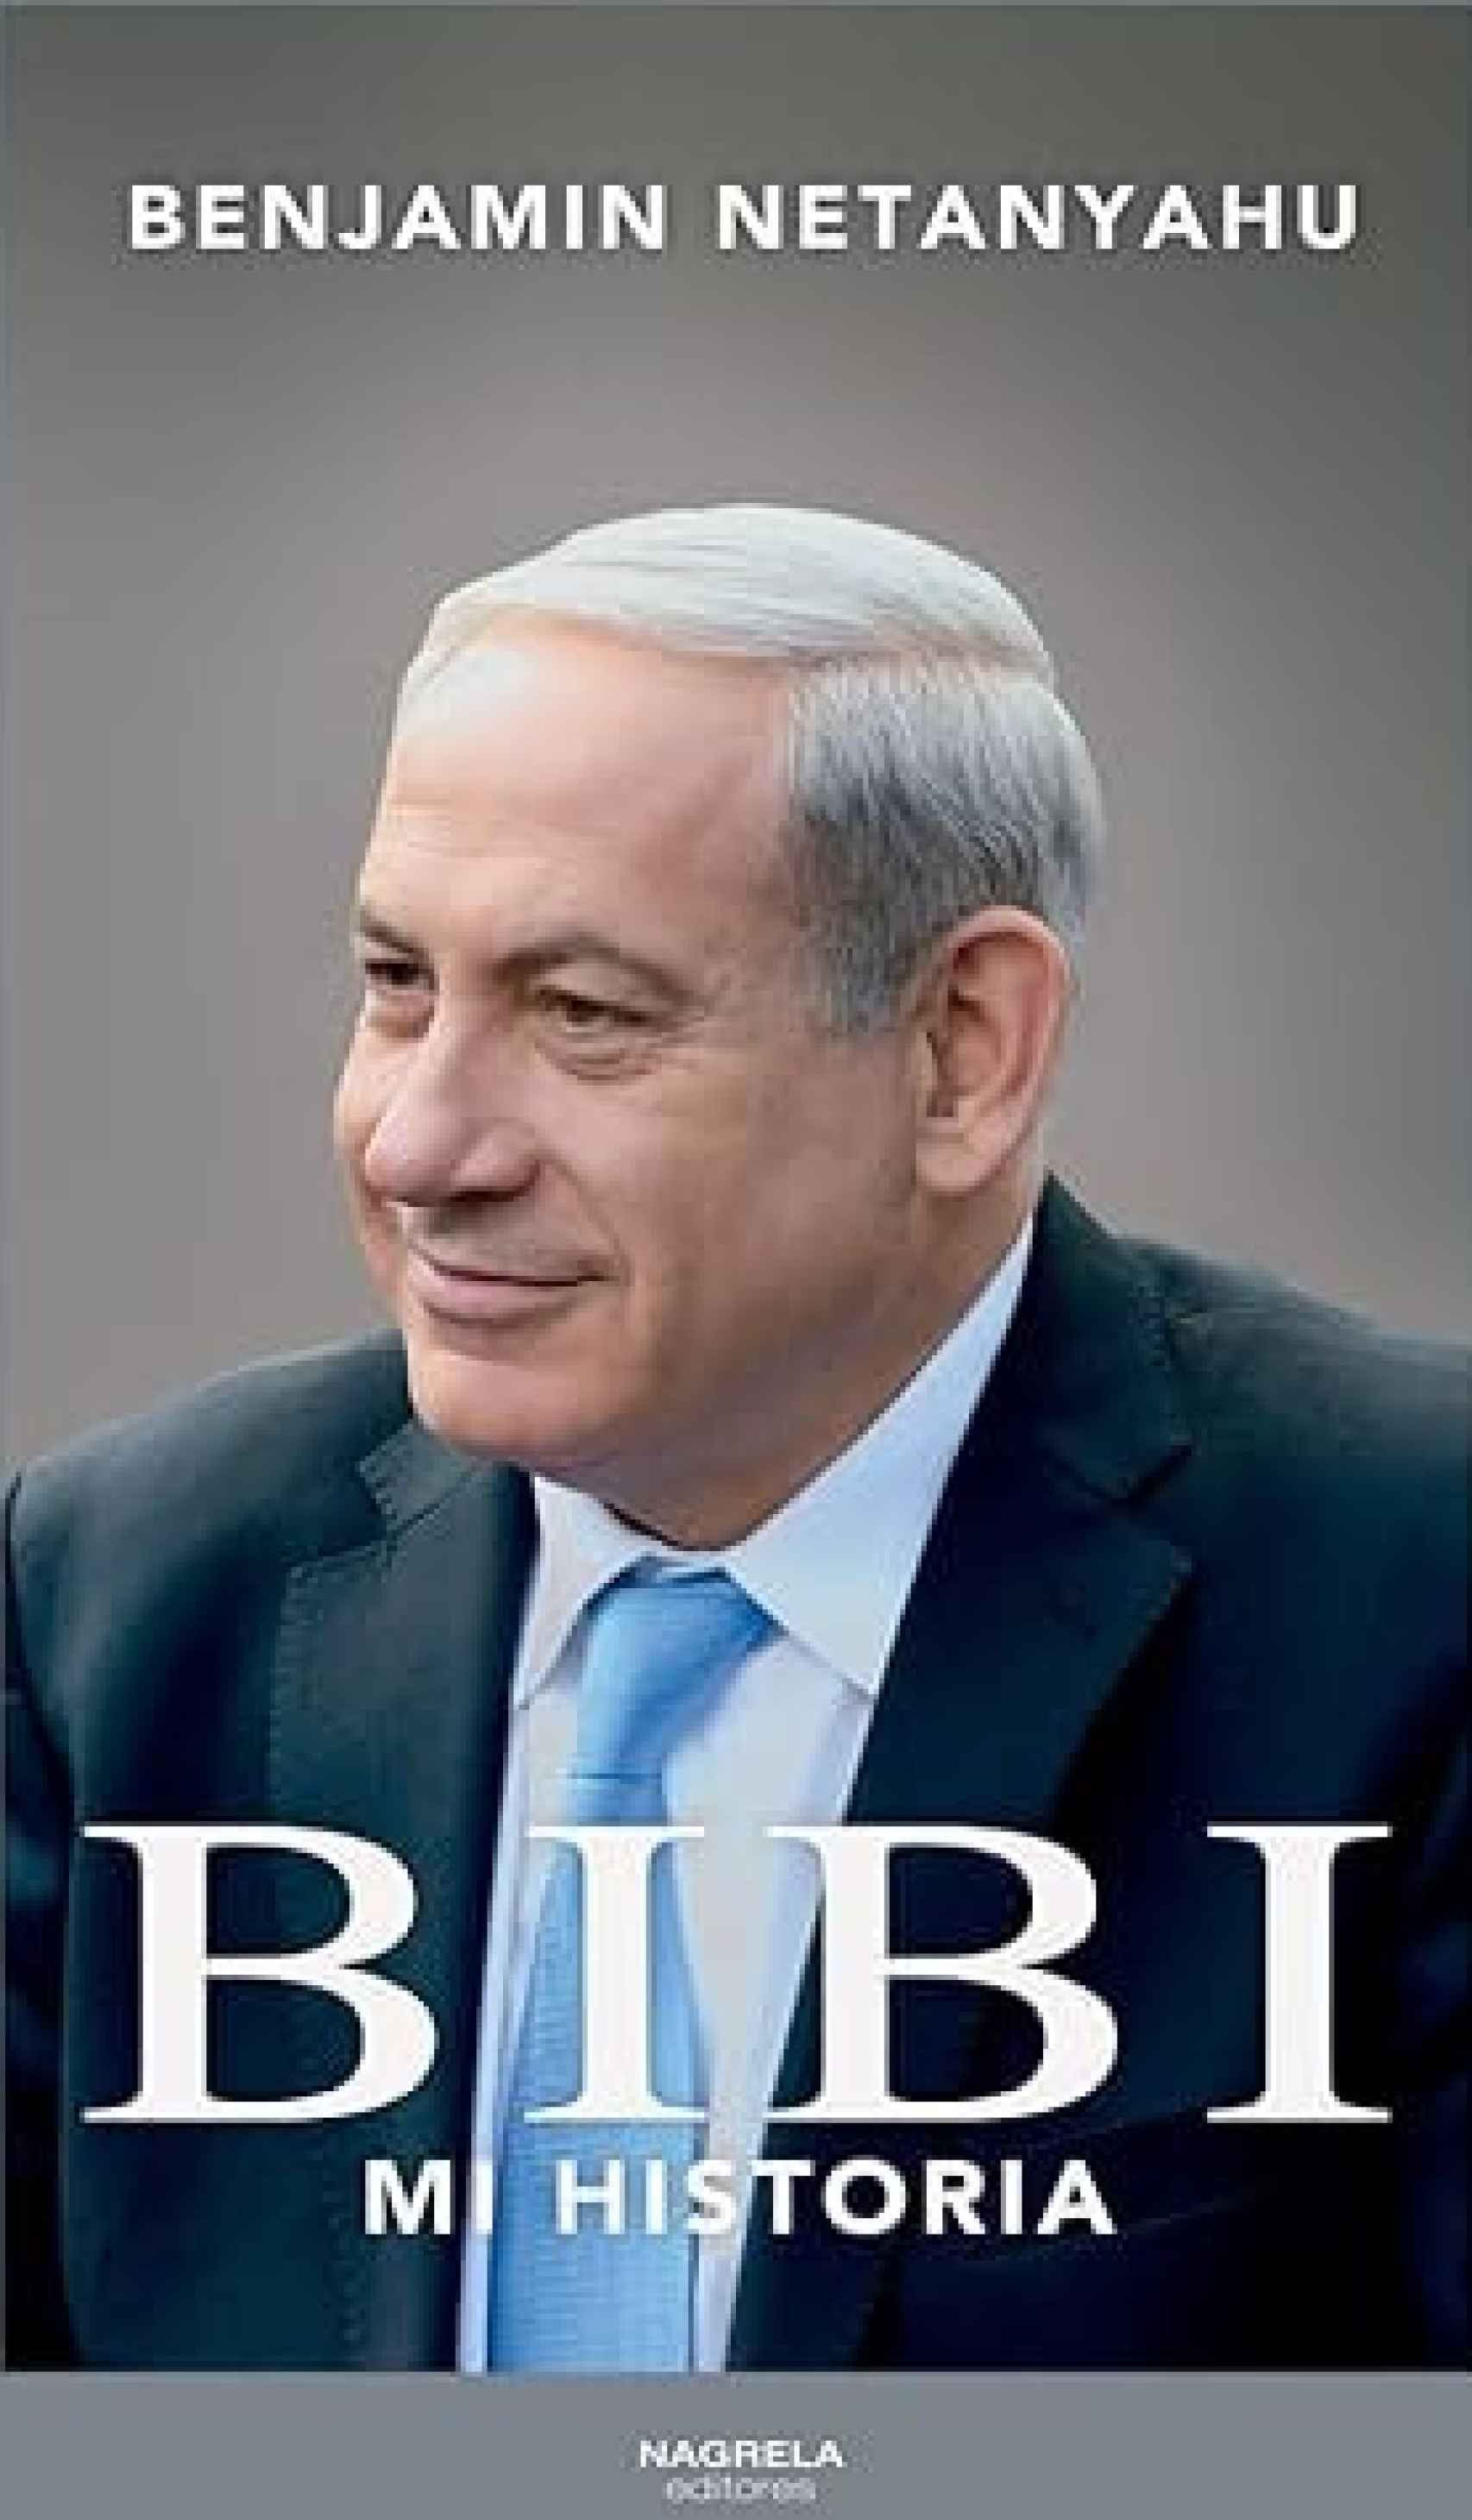 Portada de la versión española de la autobiografía de Benjamin Netanyahu.